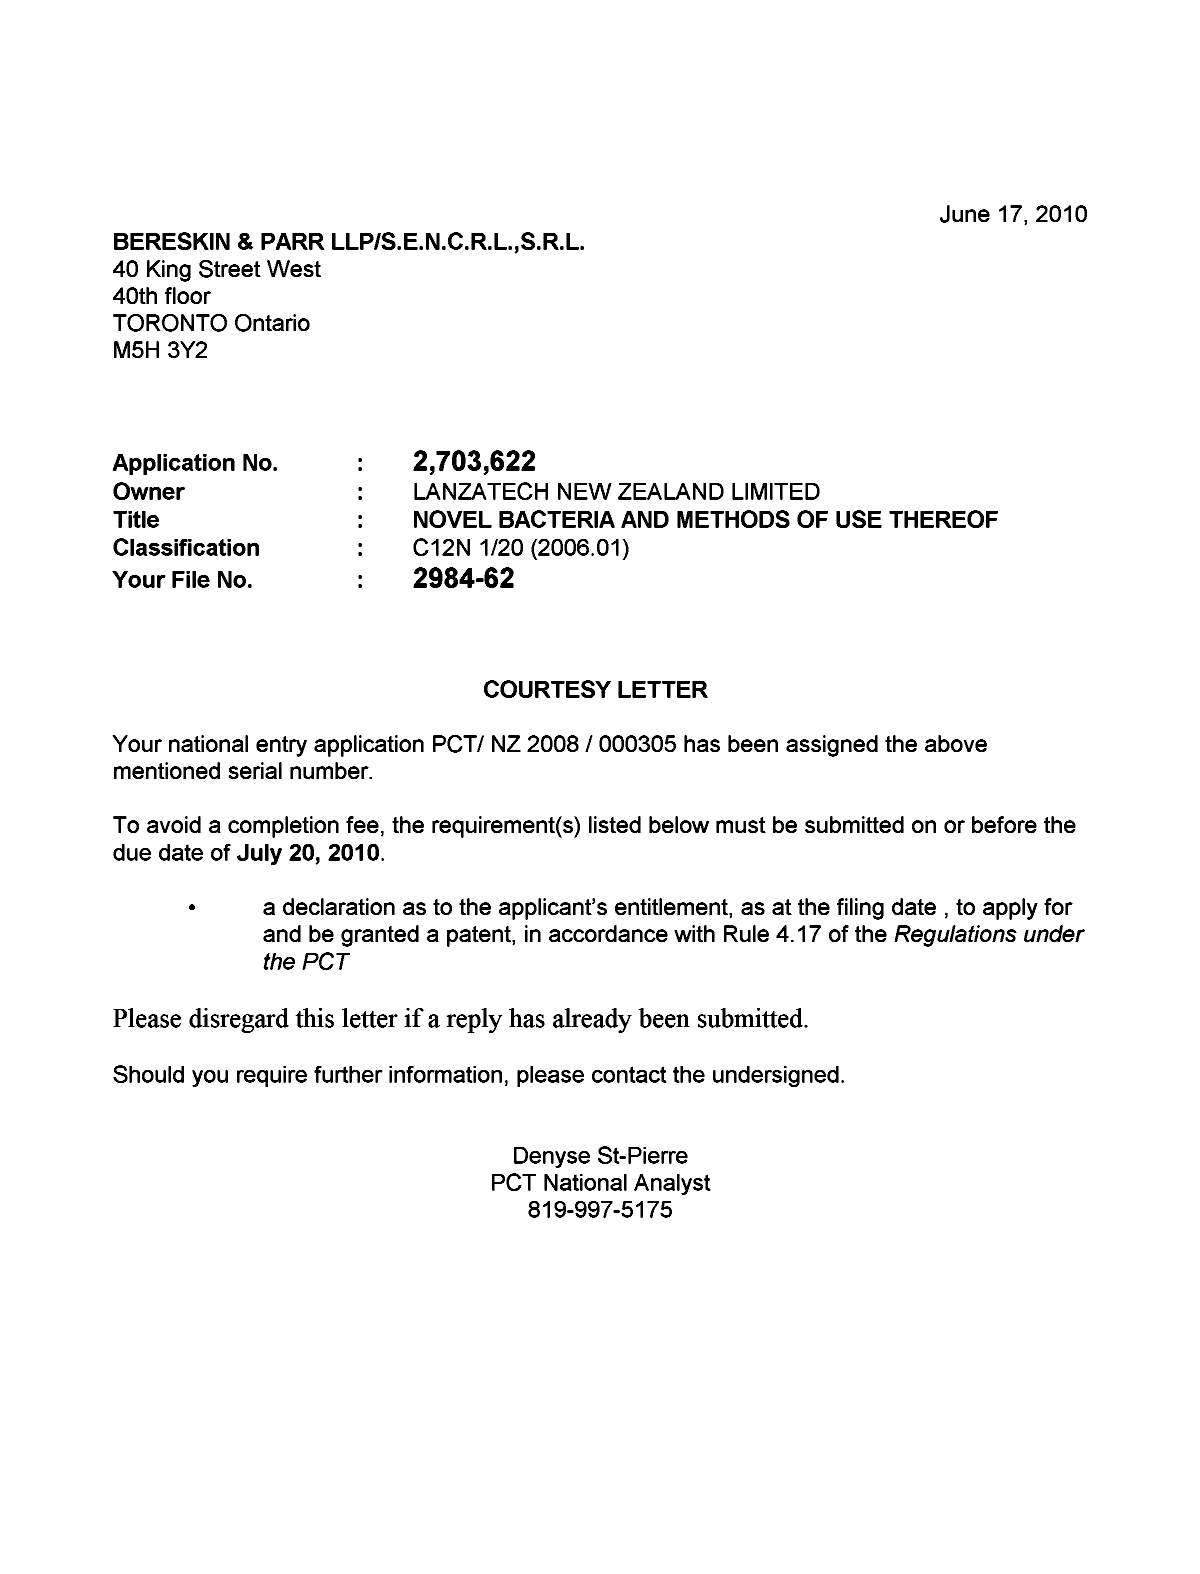 Document de brevet canadien 2703622. Correspondance 20100617. Image 1 de 1